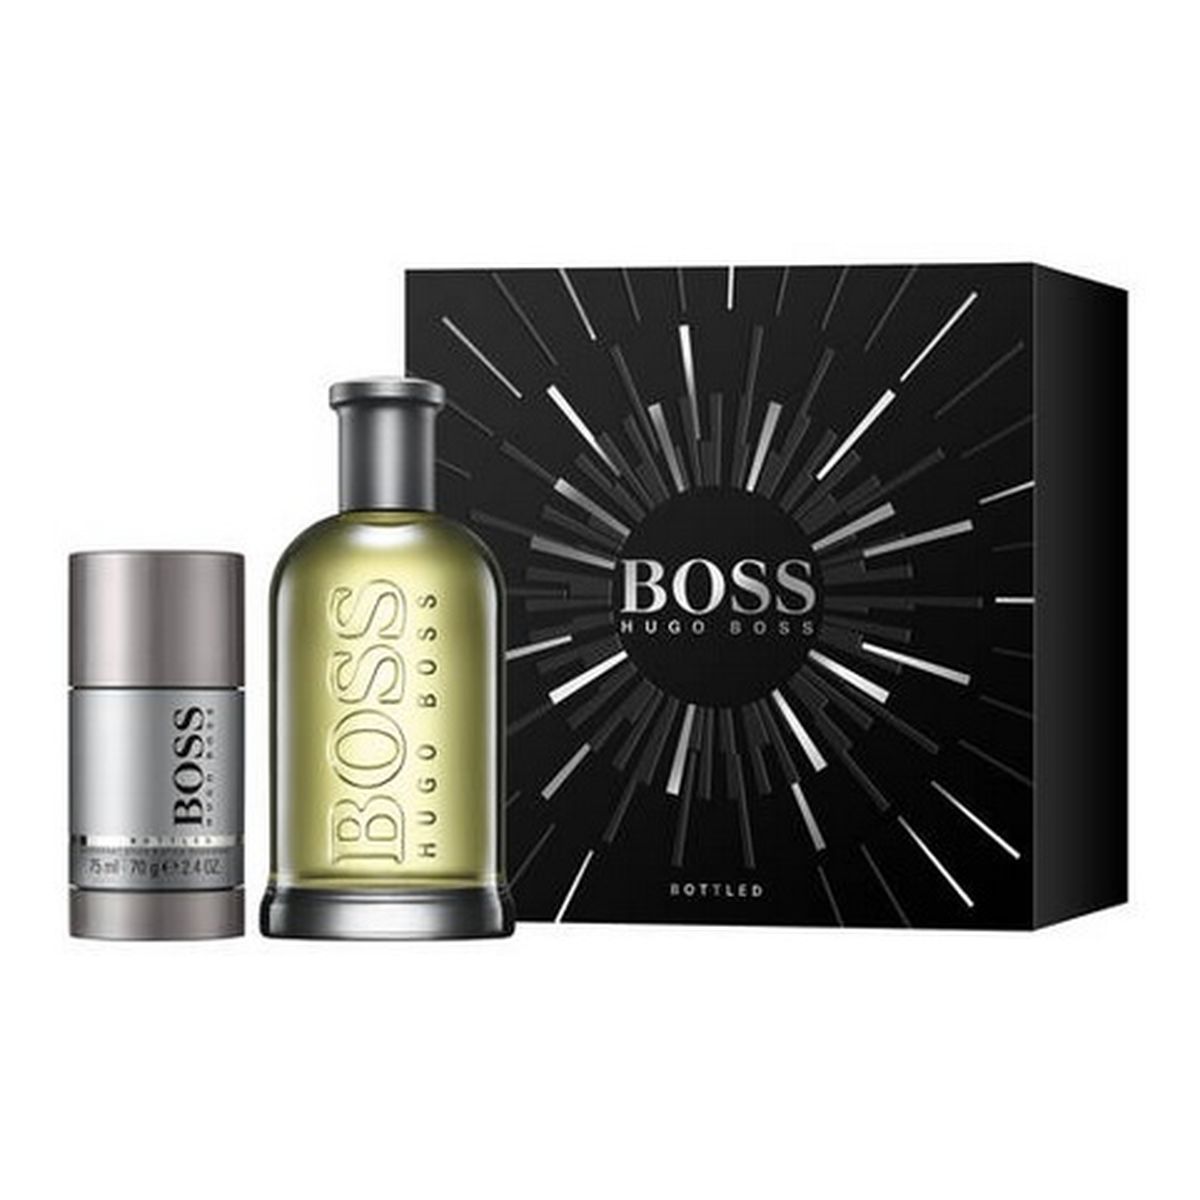 Hugo Boss Boss Bottled zestaw (woda toaletowa 200ml + dezodorant sztyft 75ml)